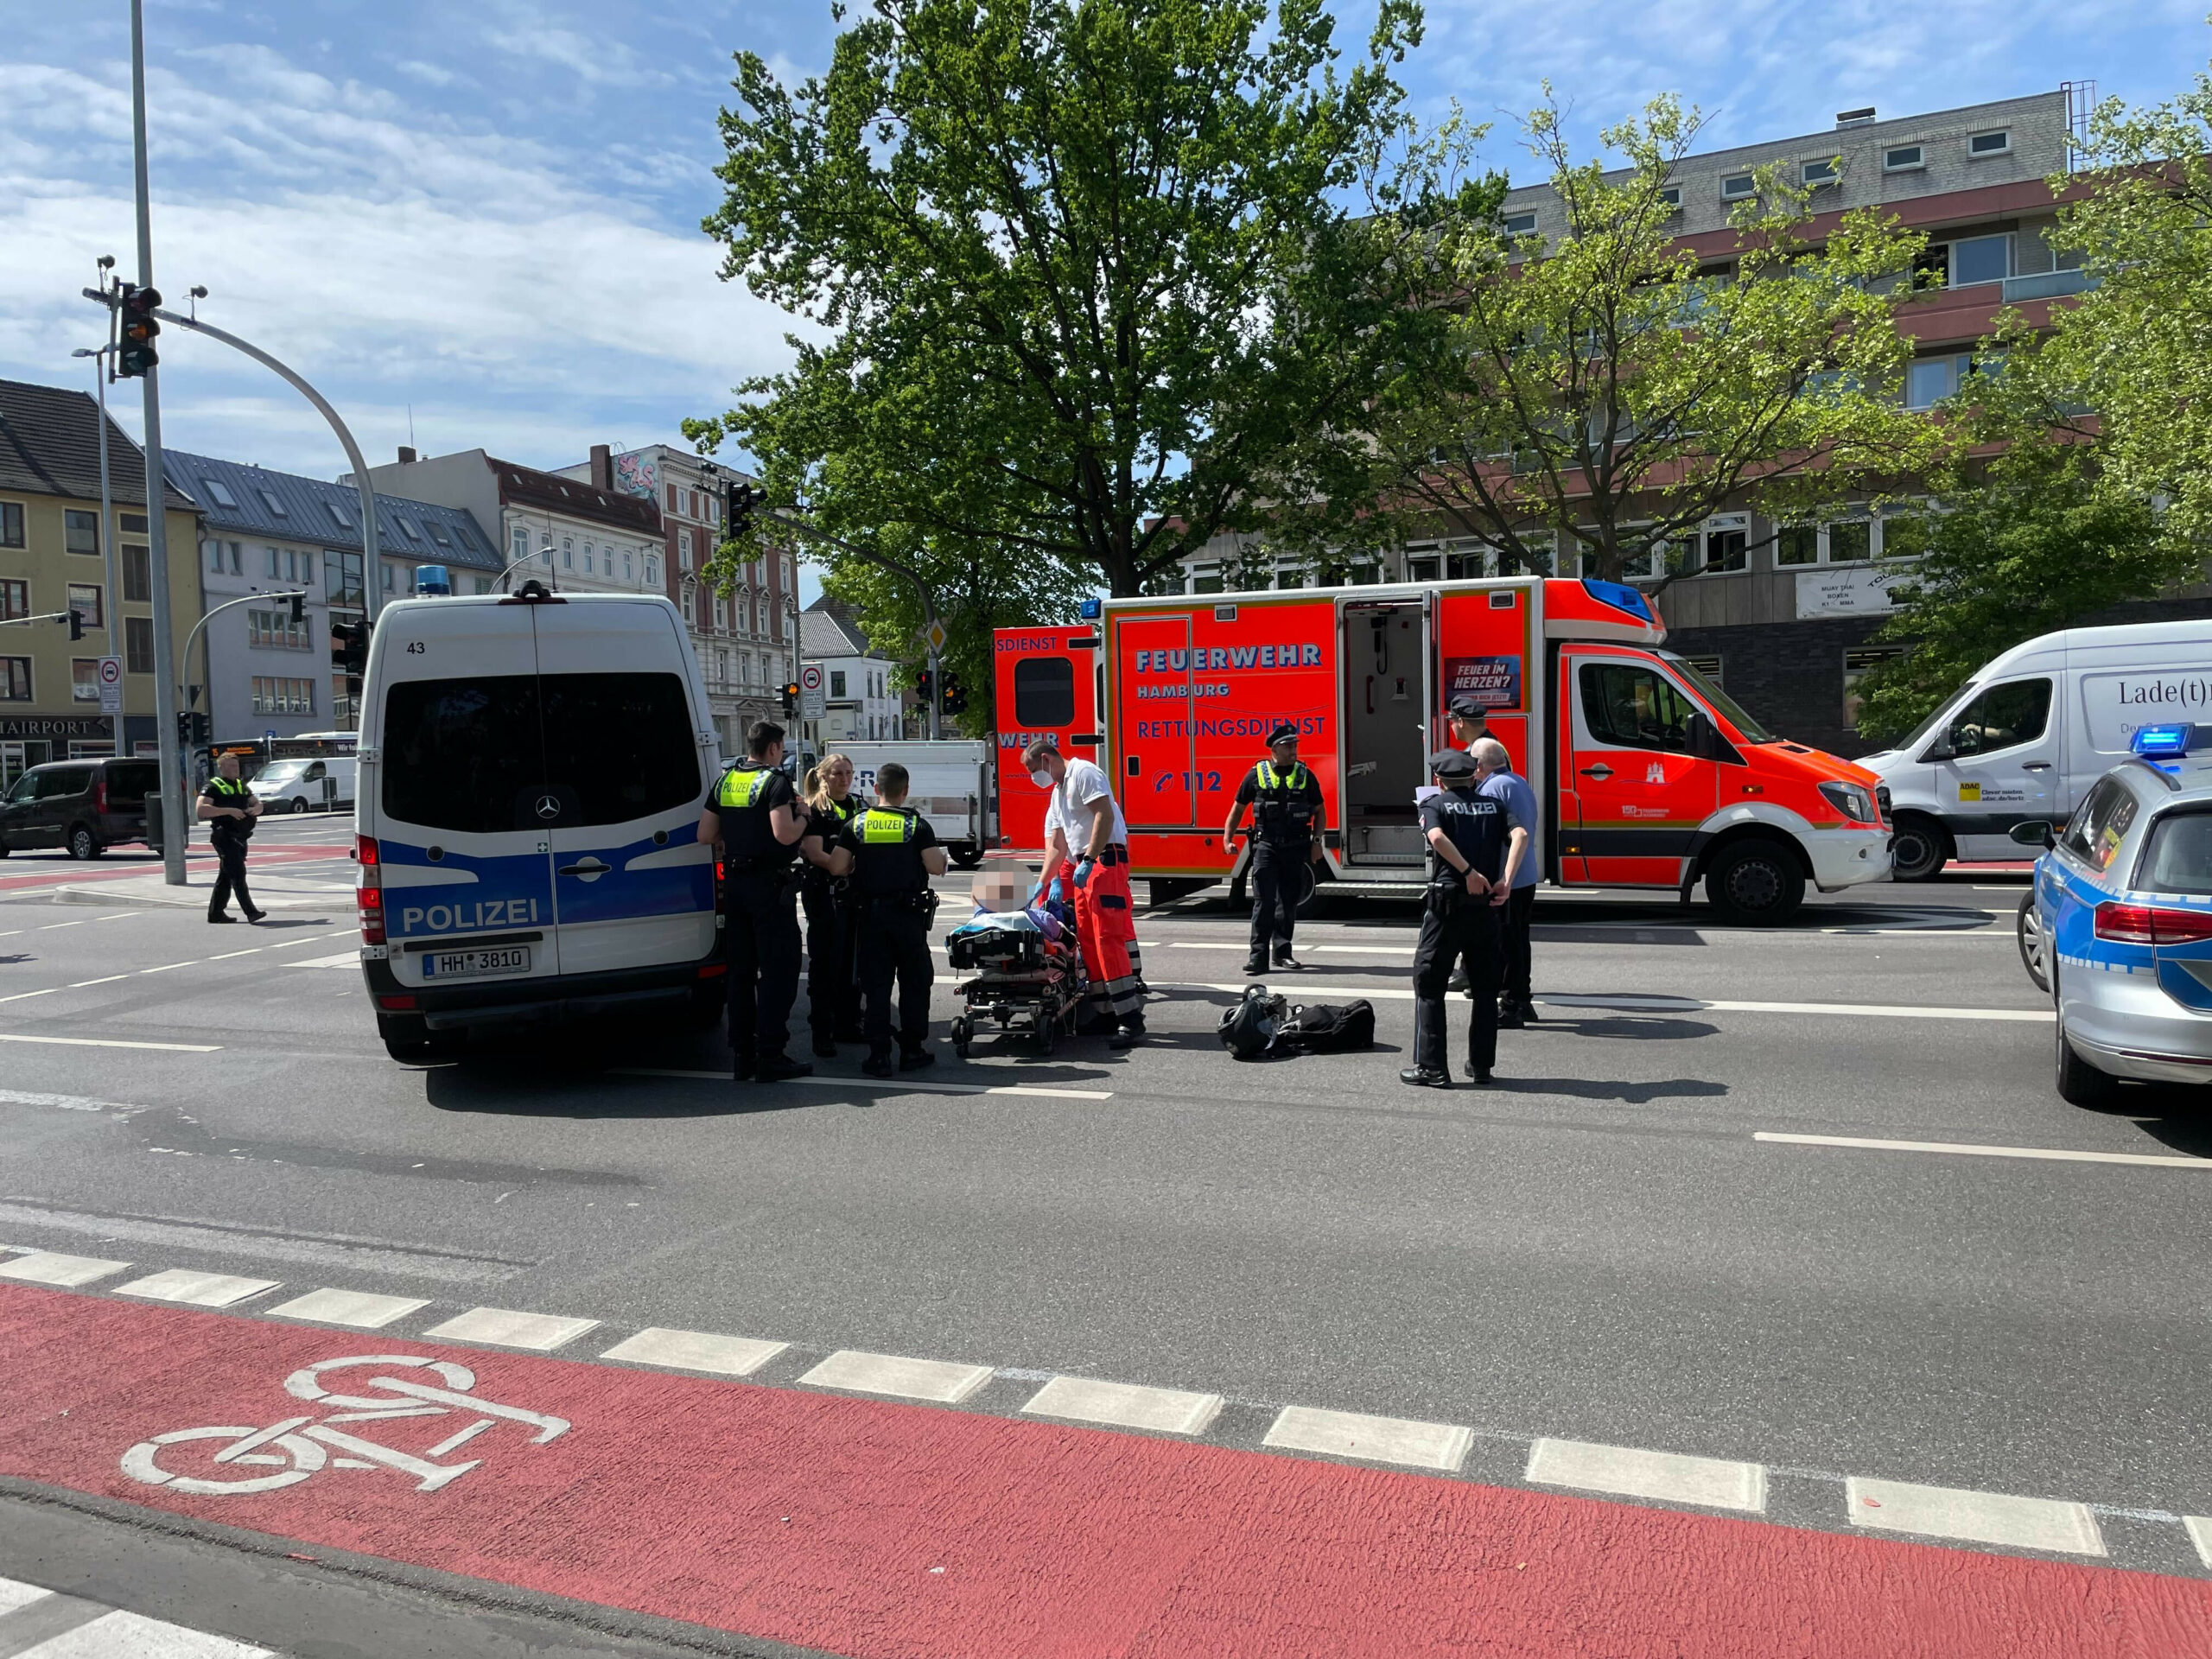 Polizei- und Feuerwehrkräfte am Einsatzort in Hamburg-Altona.